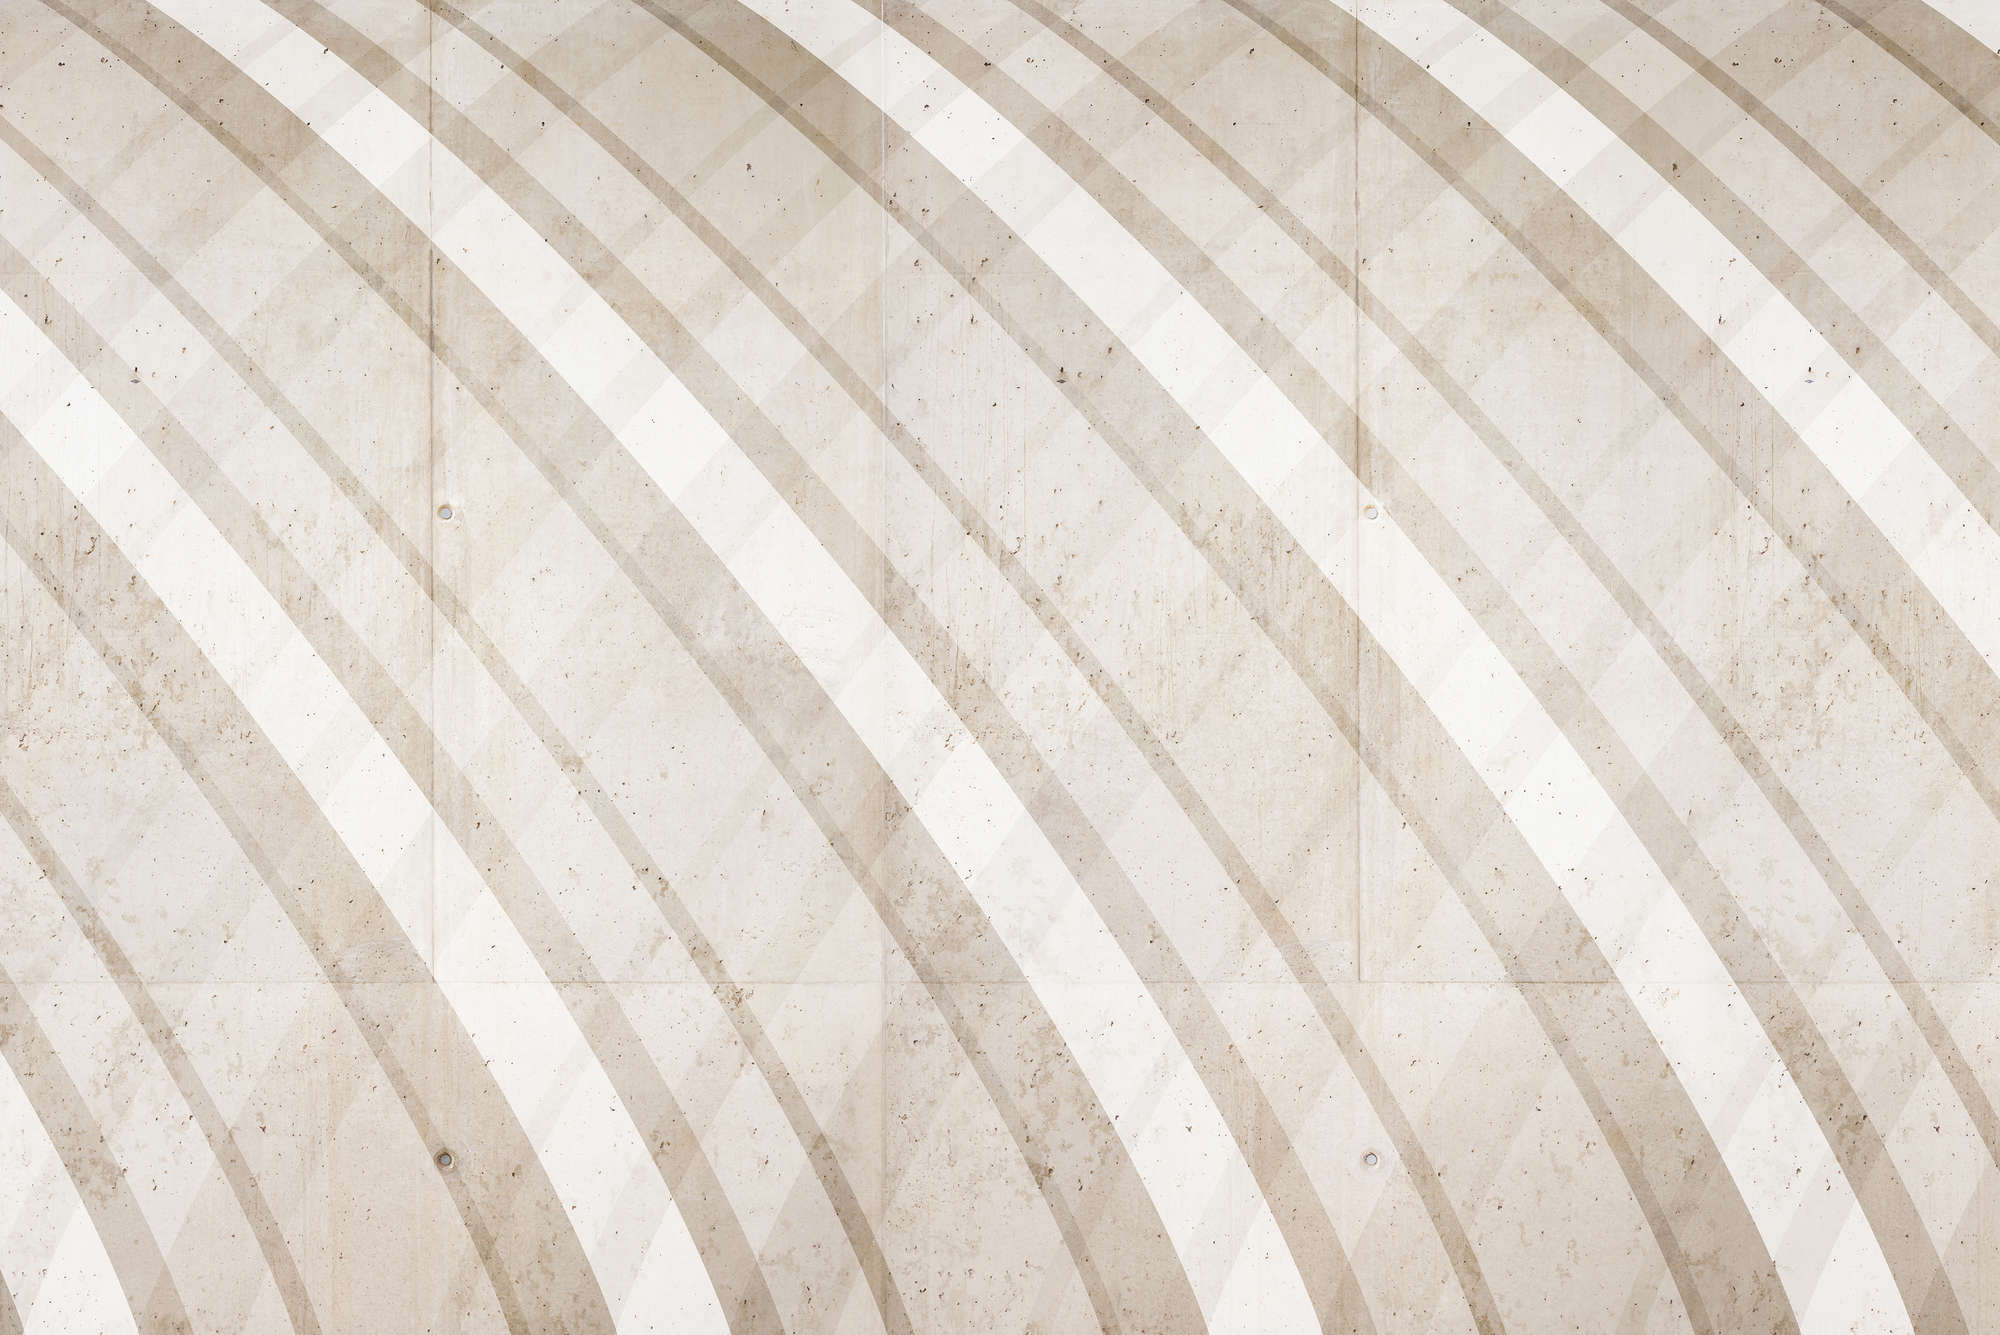             Grafisch behang met rond streeppatroon beige op structuurvlies
        